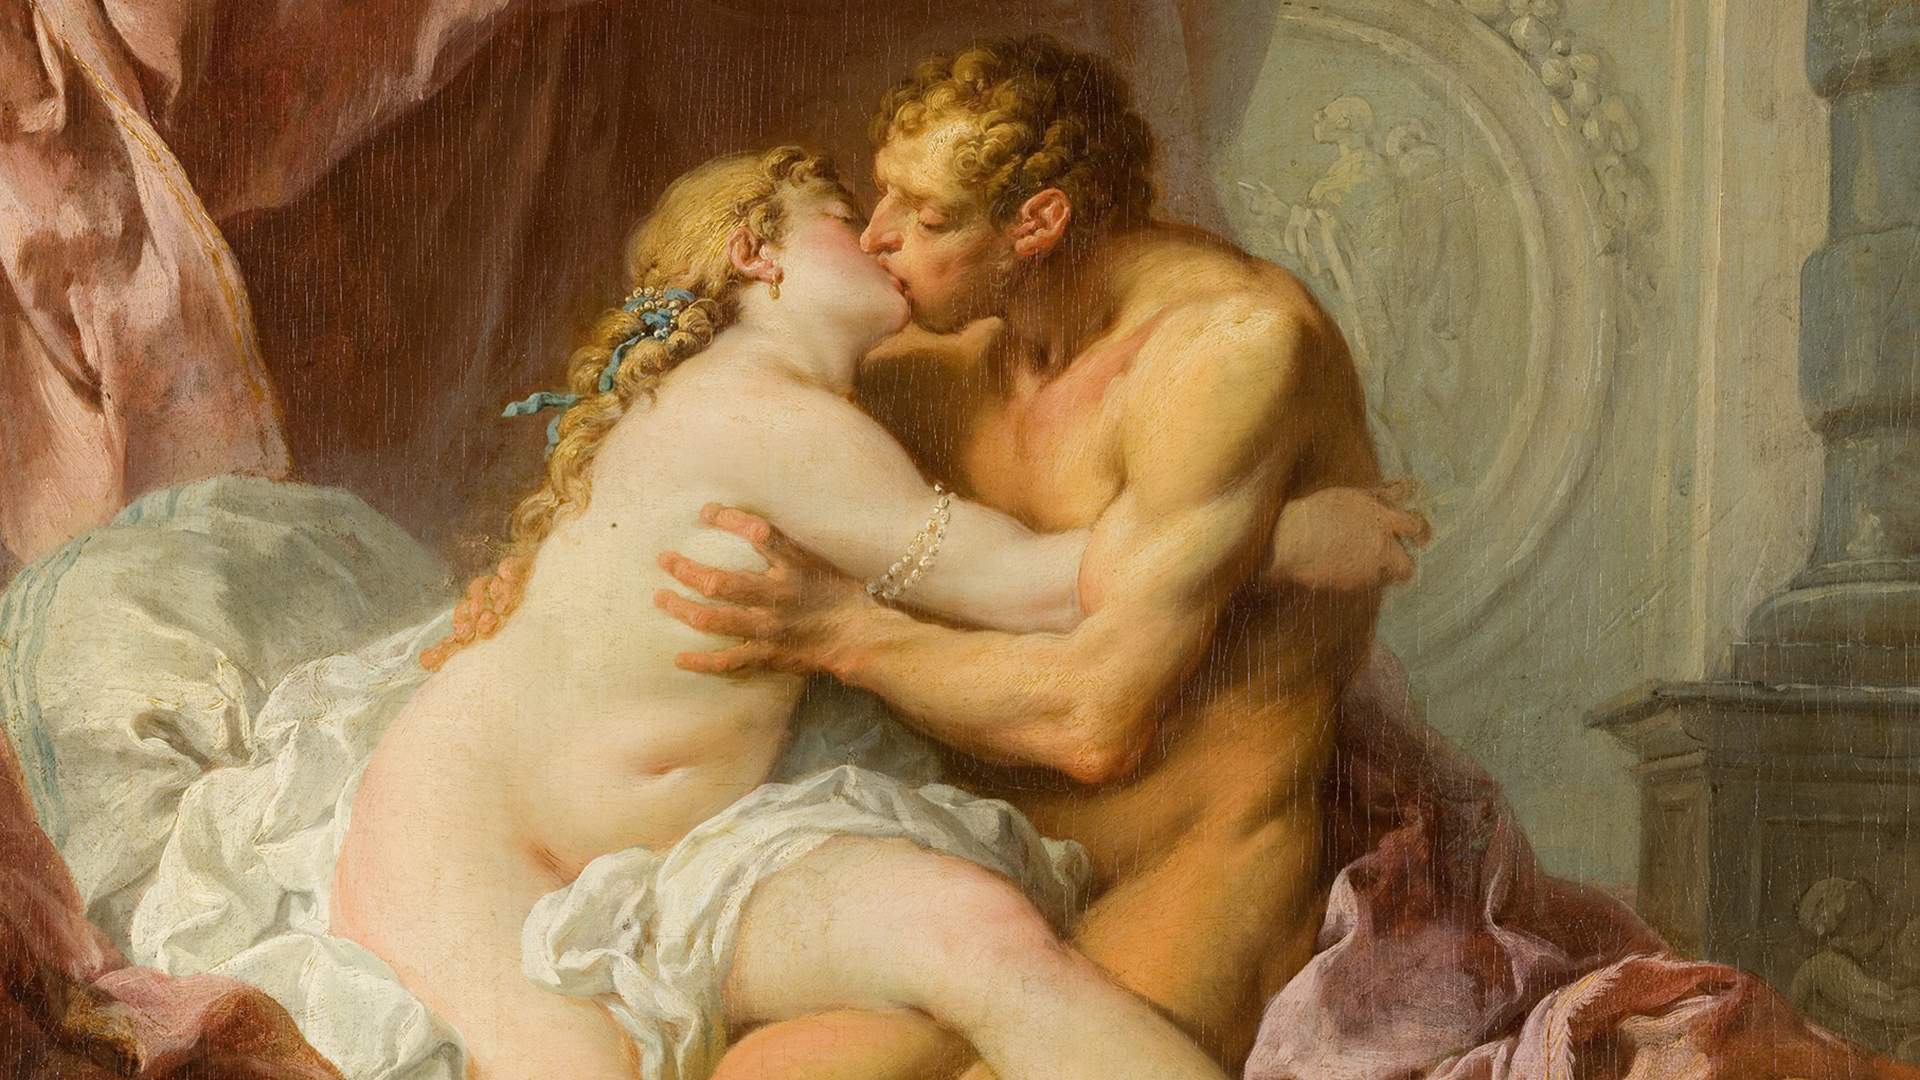 Пушкин: скрытые подробности сексуальной жизни